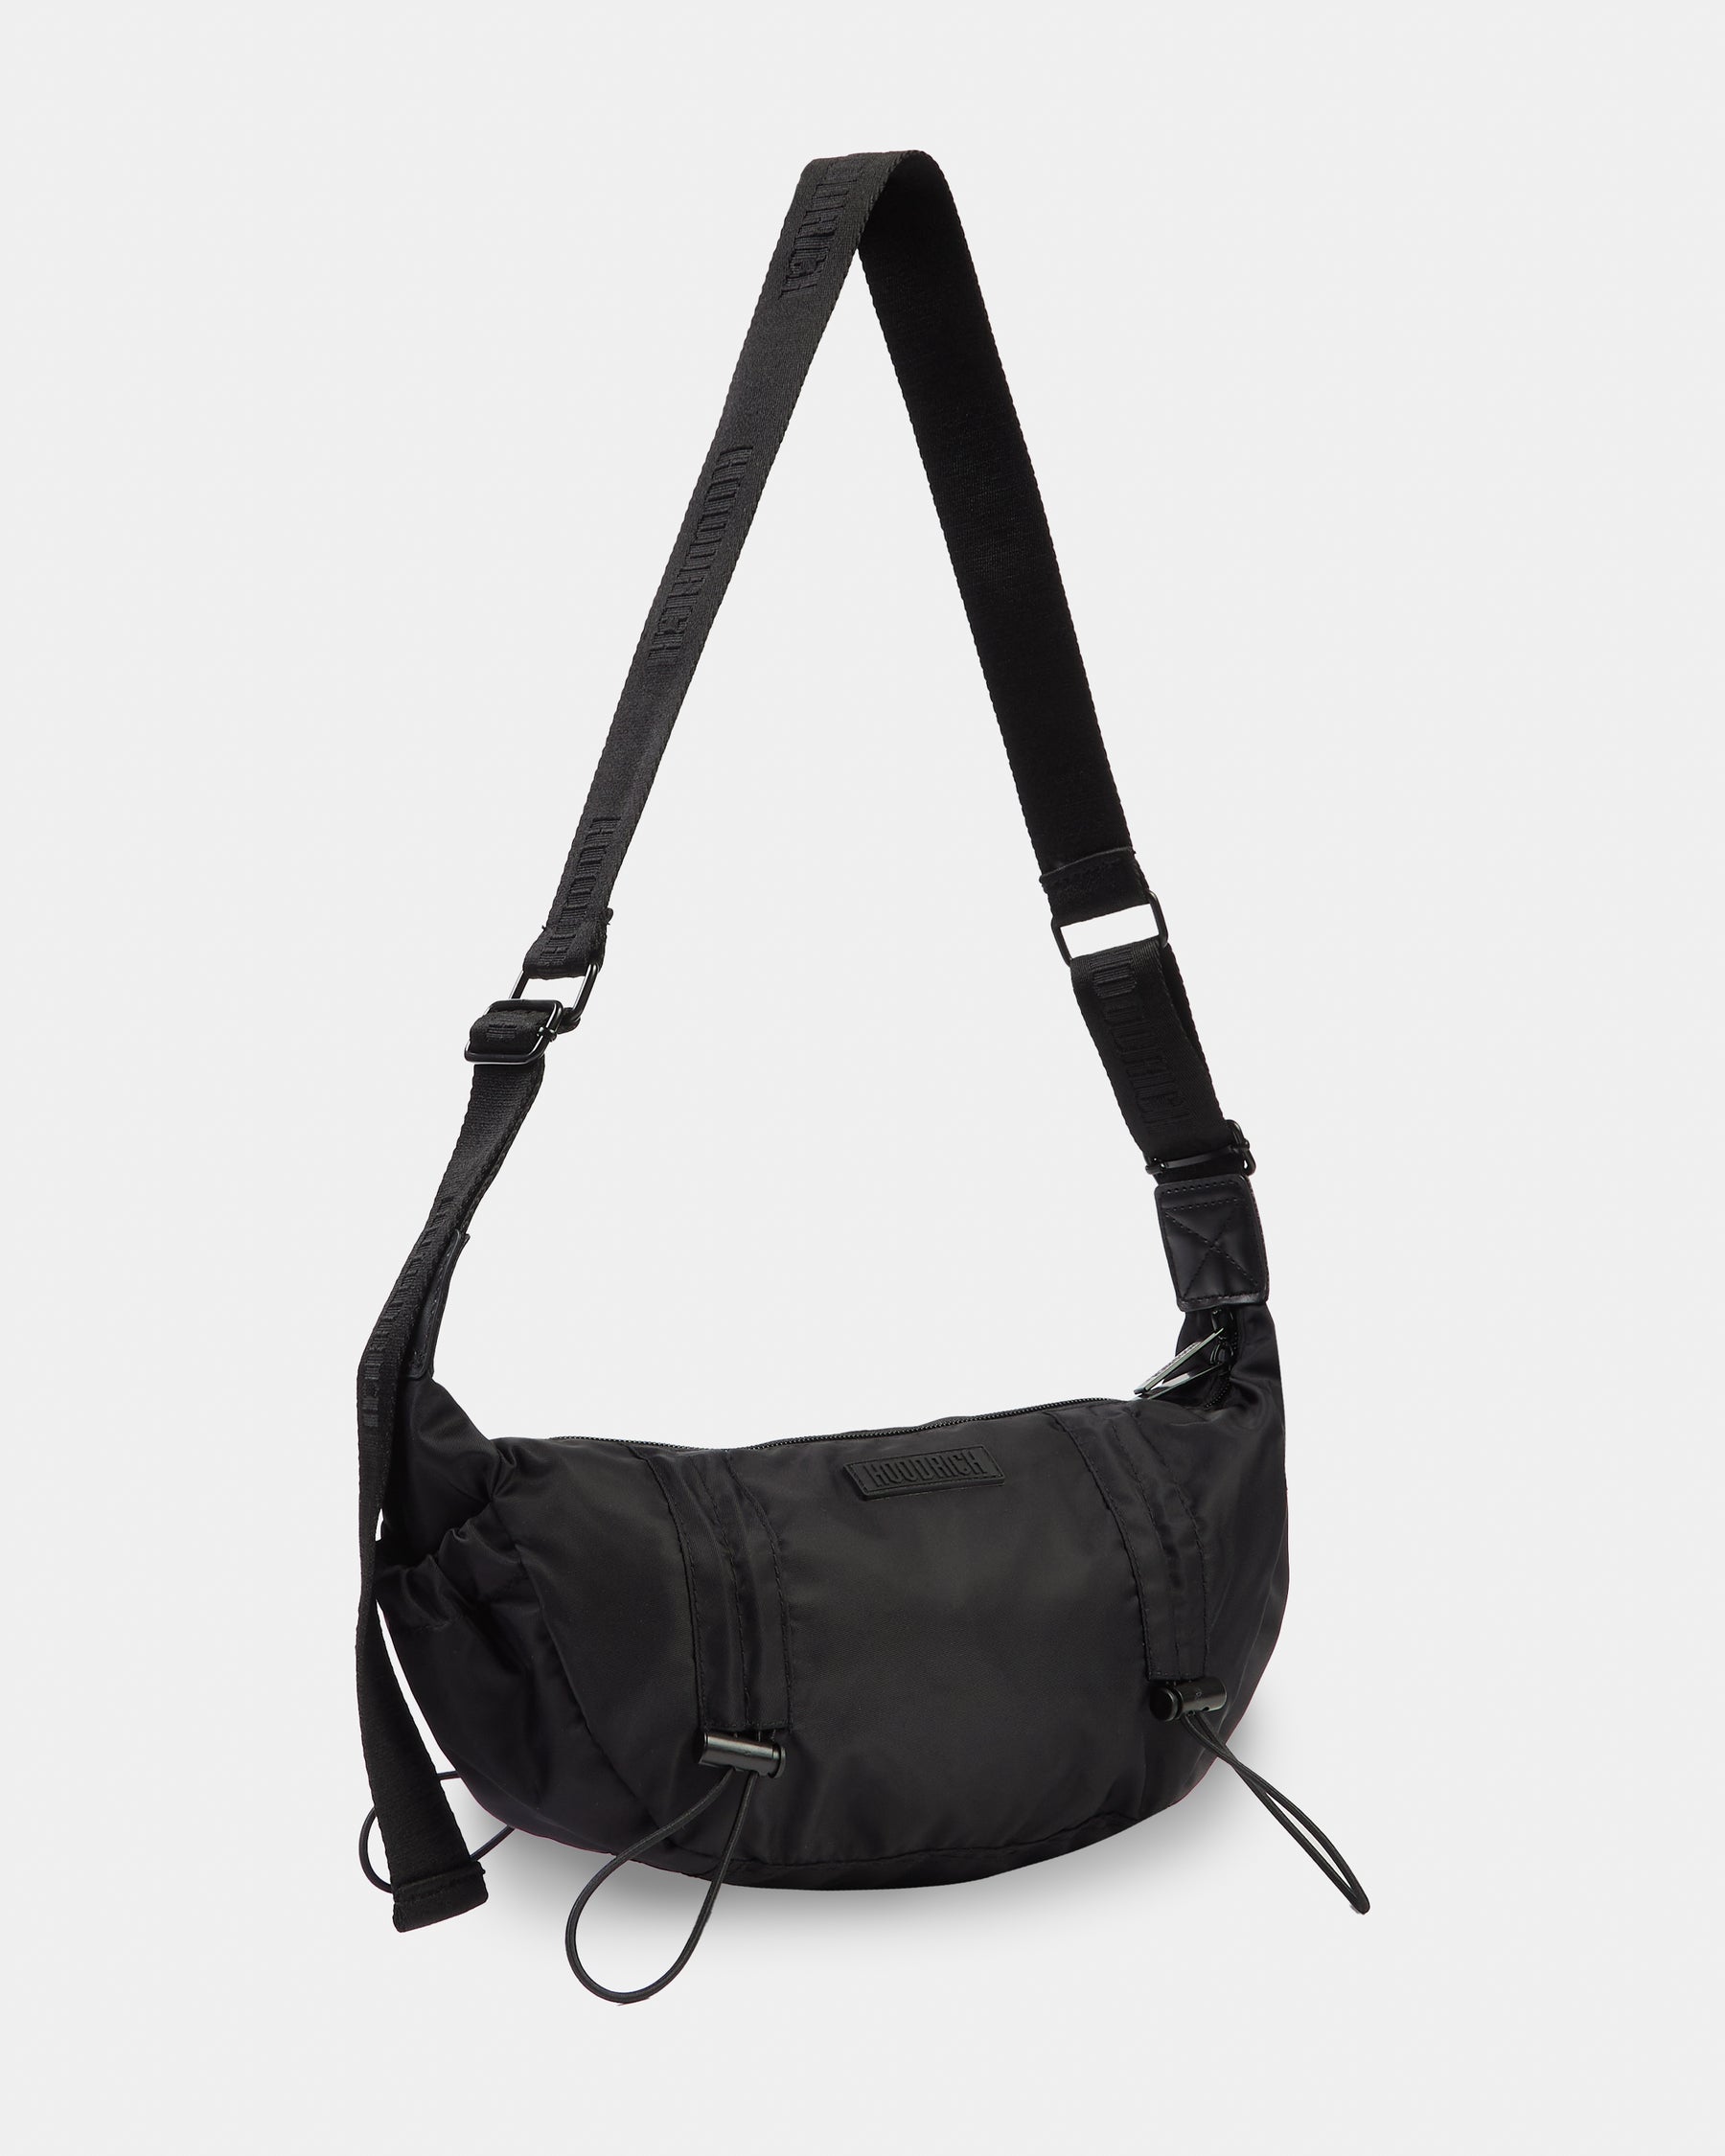 OG Core Women's Shoulder Bag - Black